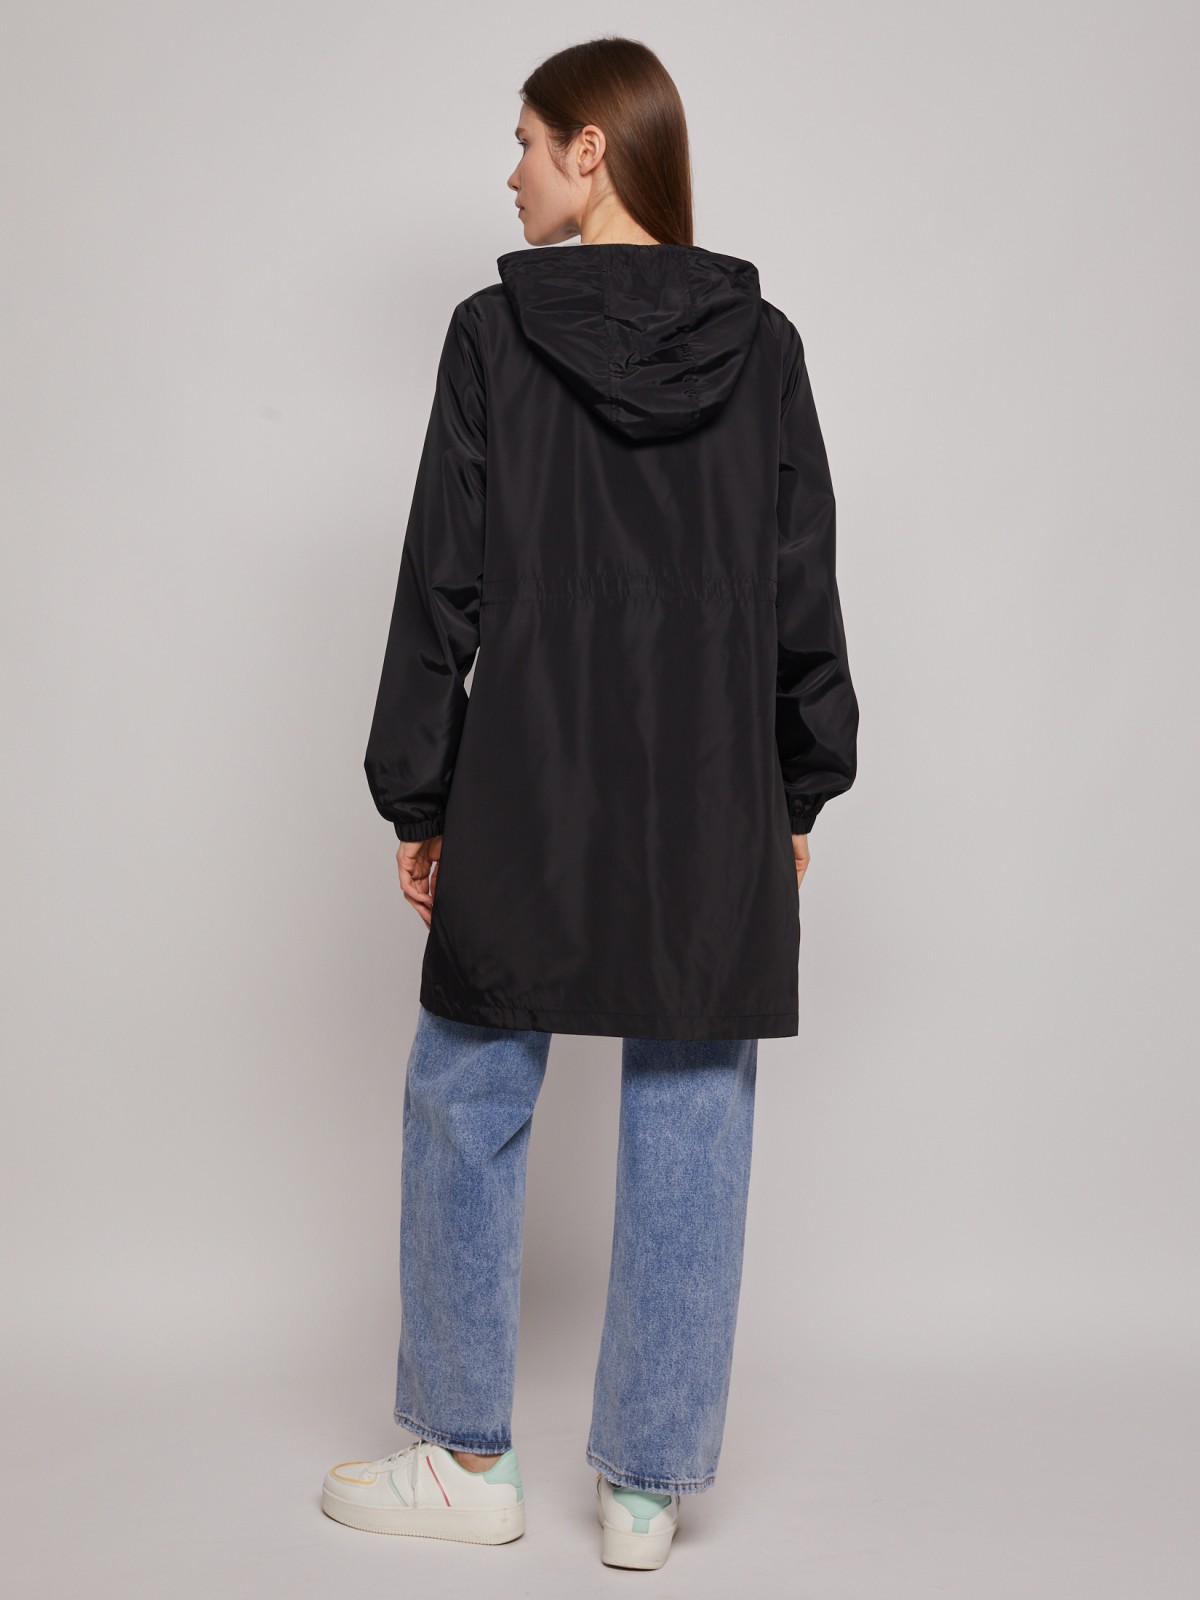 Куртка-парка с капюшоном zolla 02321570L024, цвет черный, размер XS - фото 5